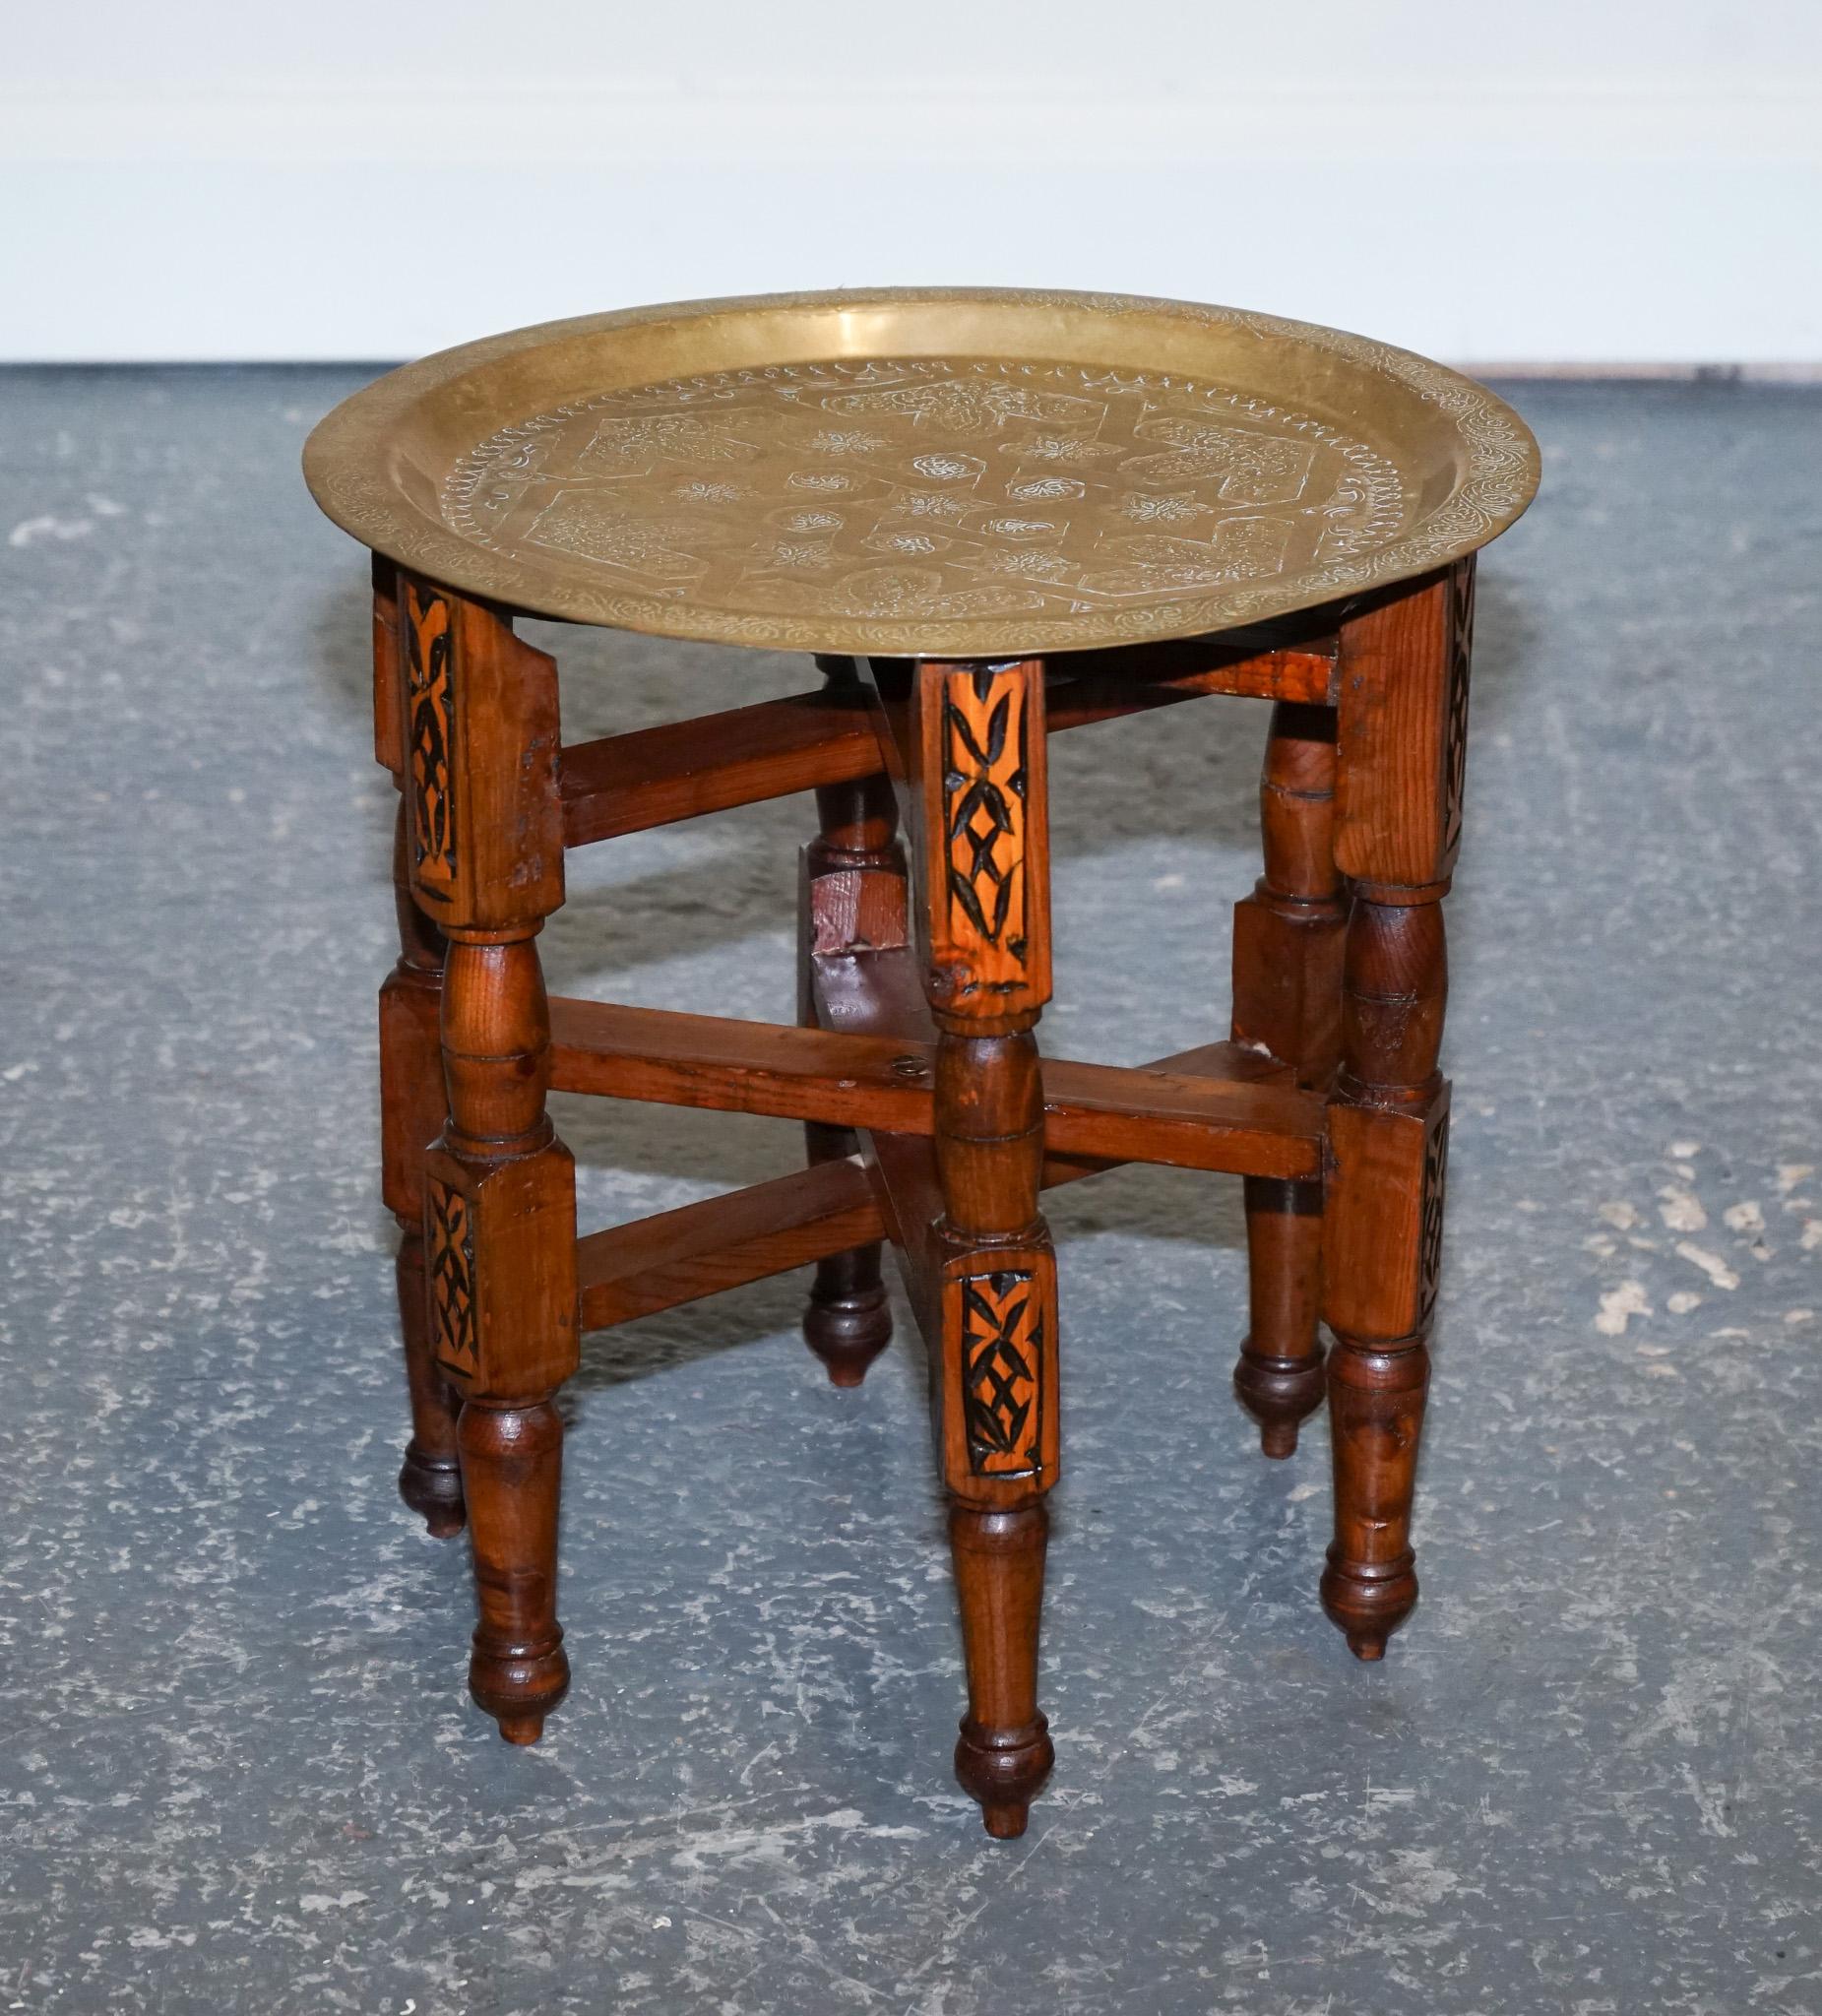 Nous sommes ravis d'offrir à la vente cette magnifique table marocaine en laiton.

La table plateau pliante marocaine en laiton Moorish est un meuble de belle facture qui présente des détails complexes et un design fonctionnel.

 La table est